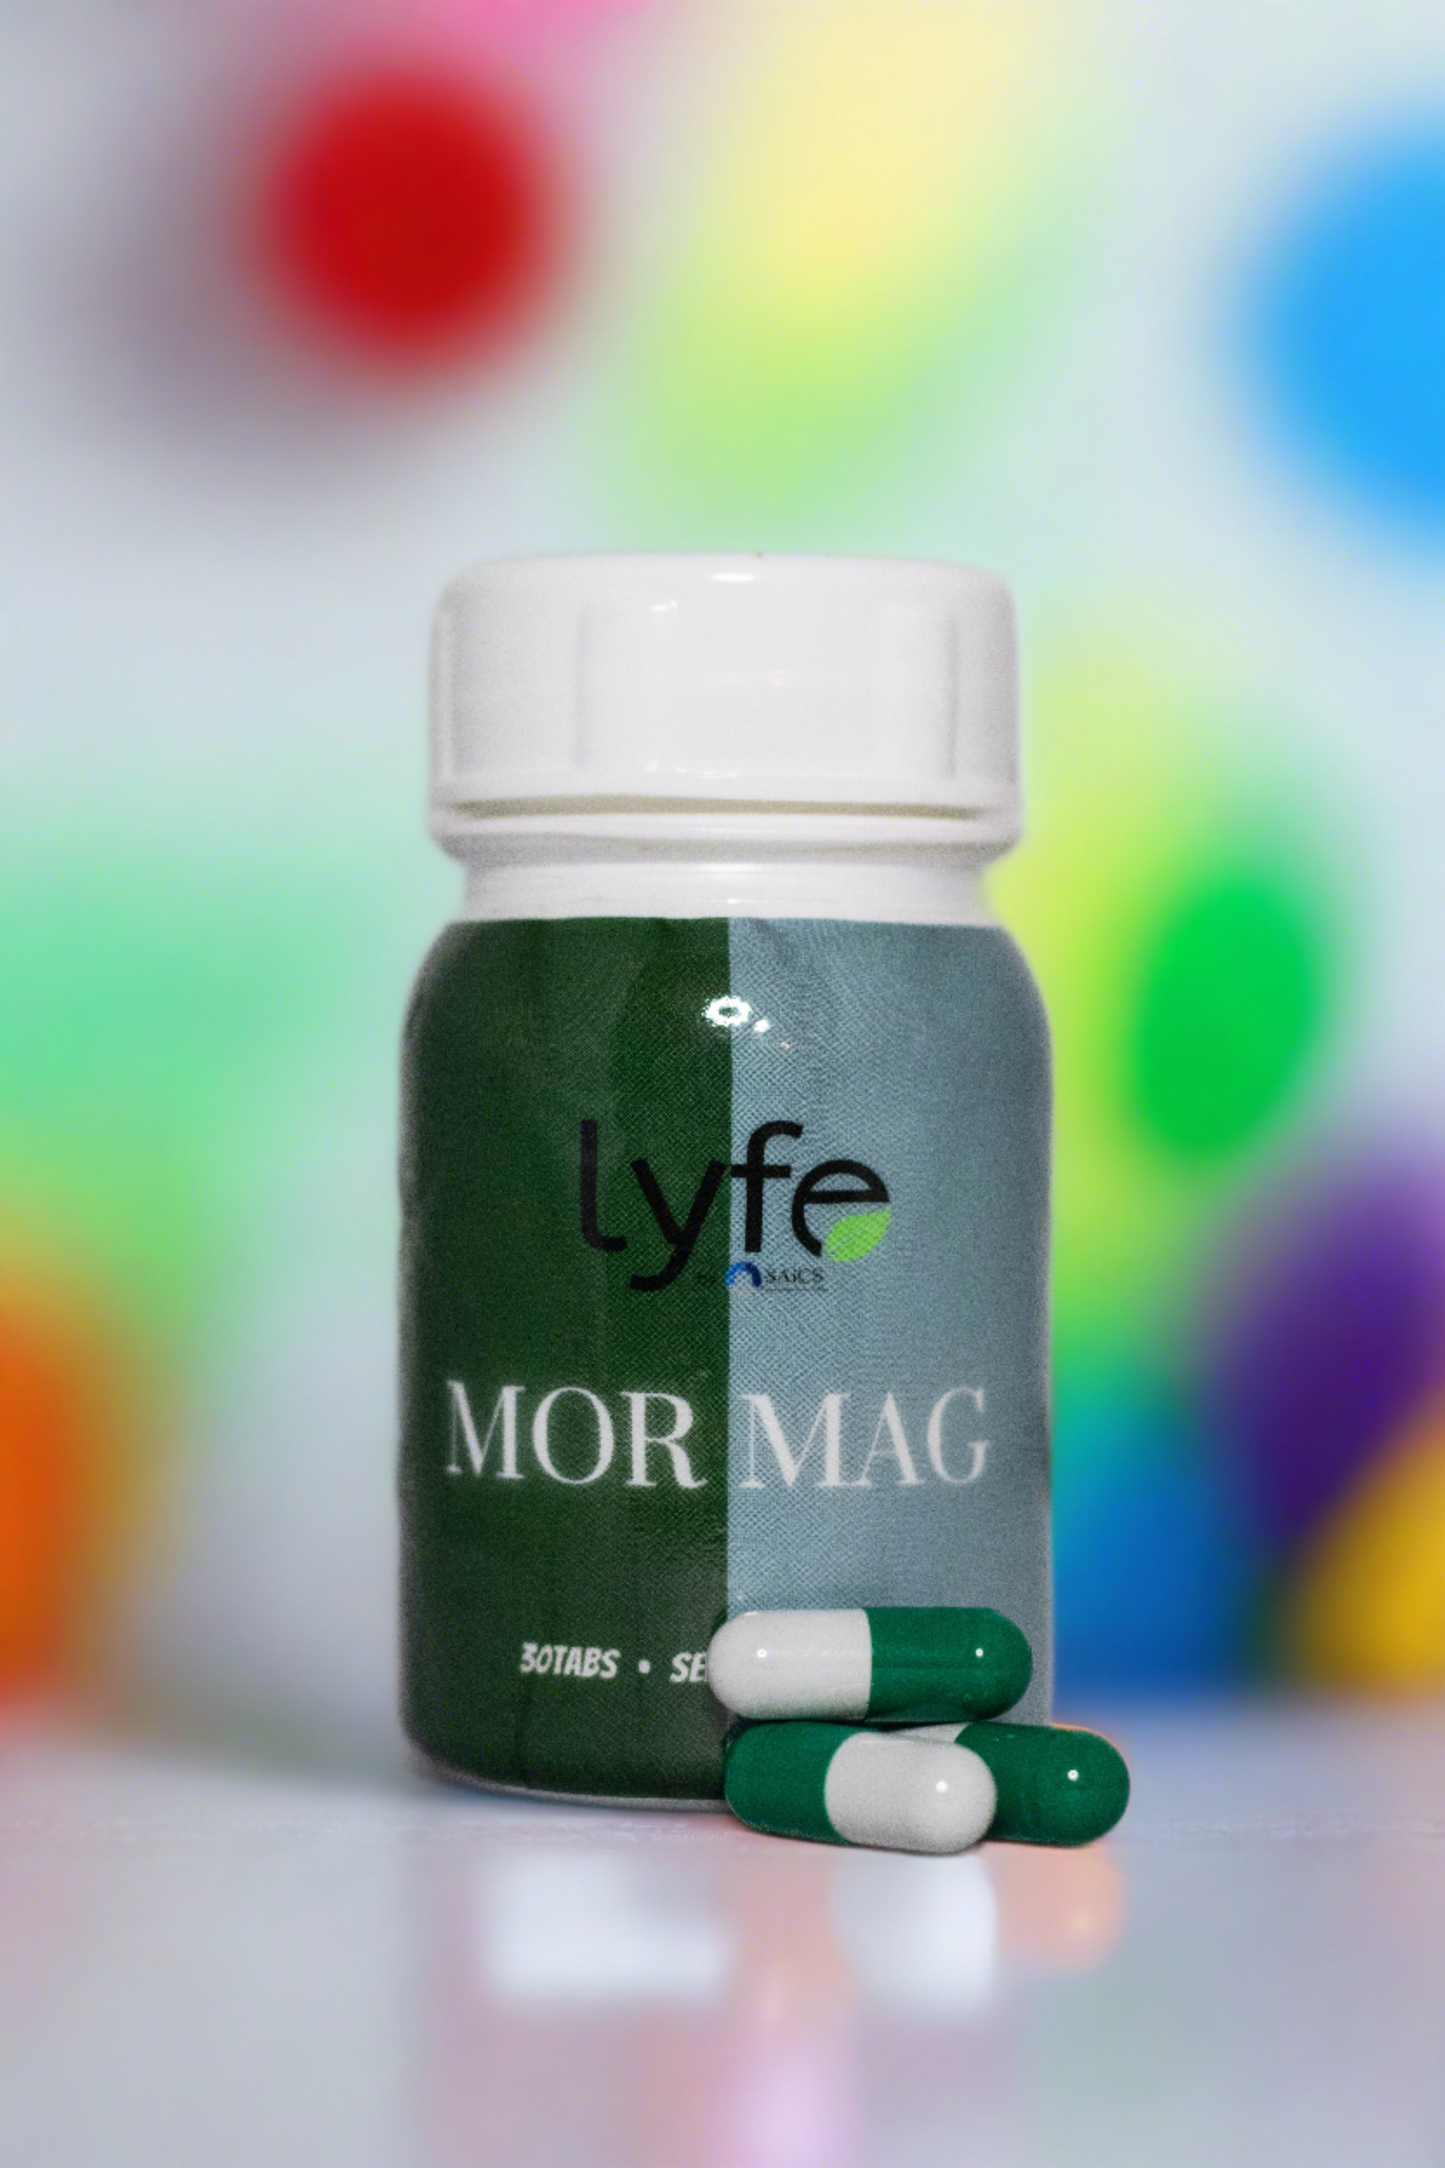 MorMag – Moringa and Magnesium 100g Tablets